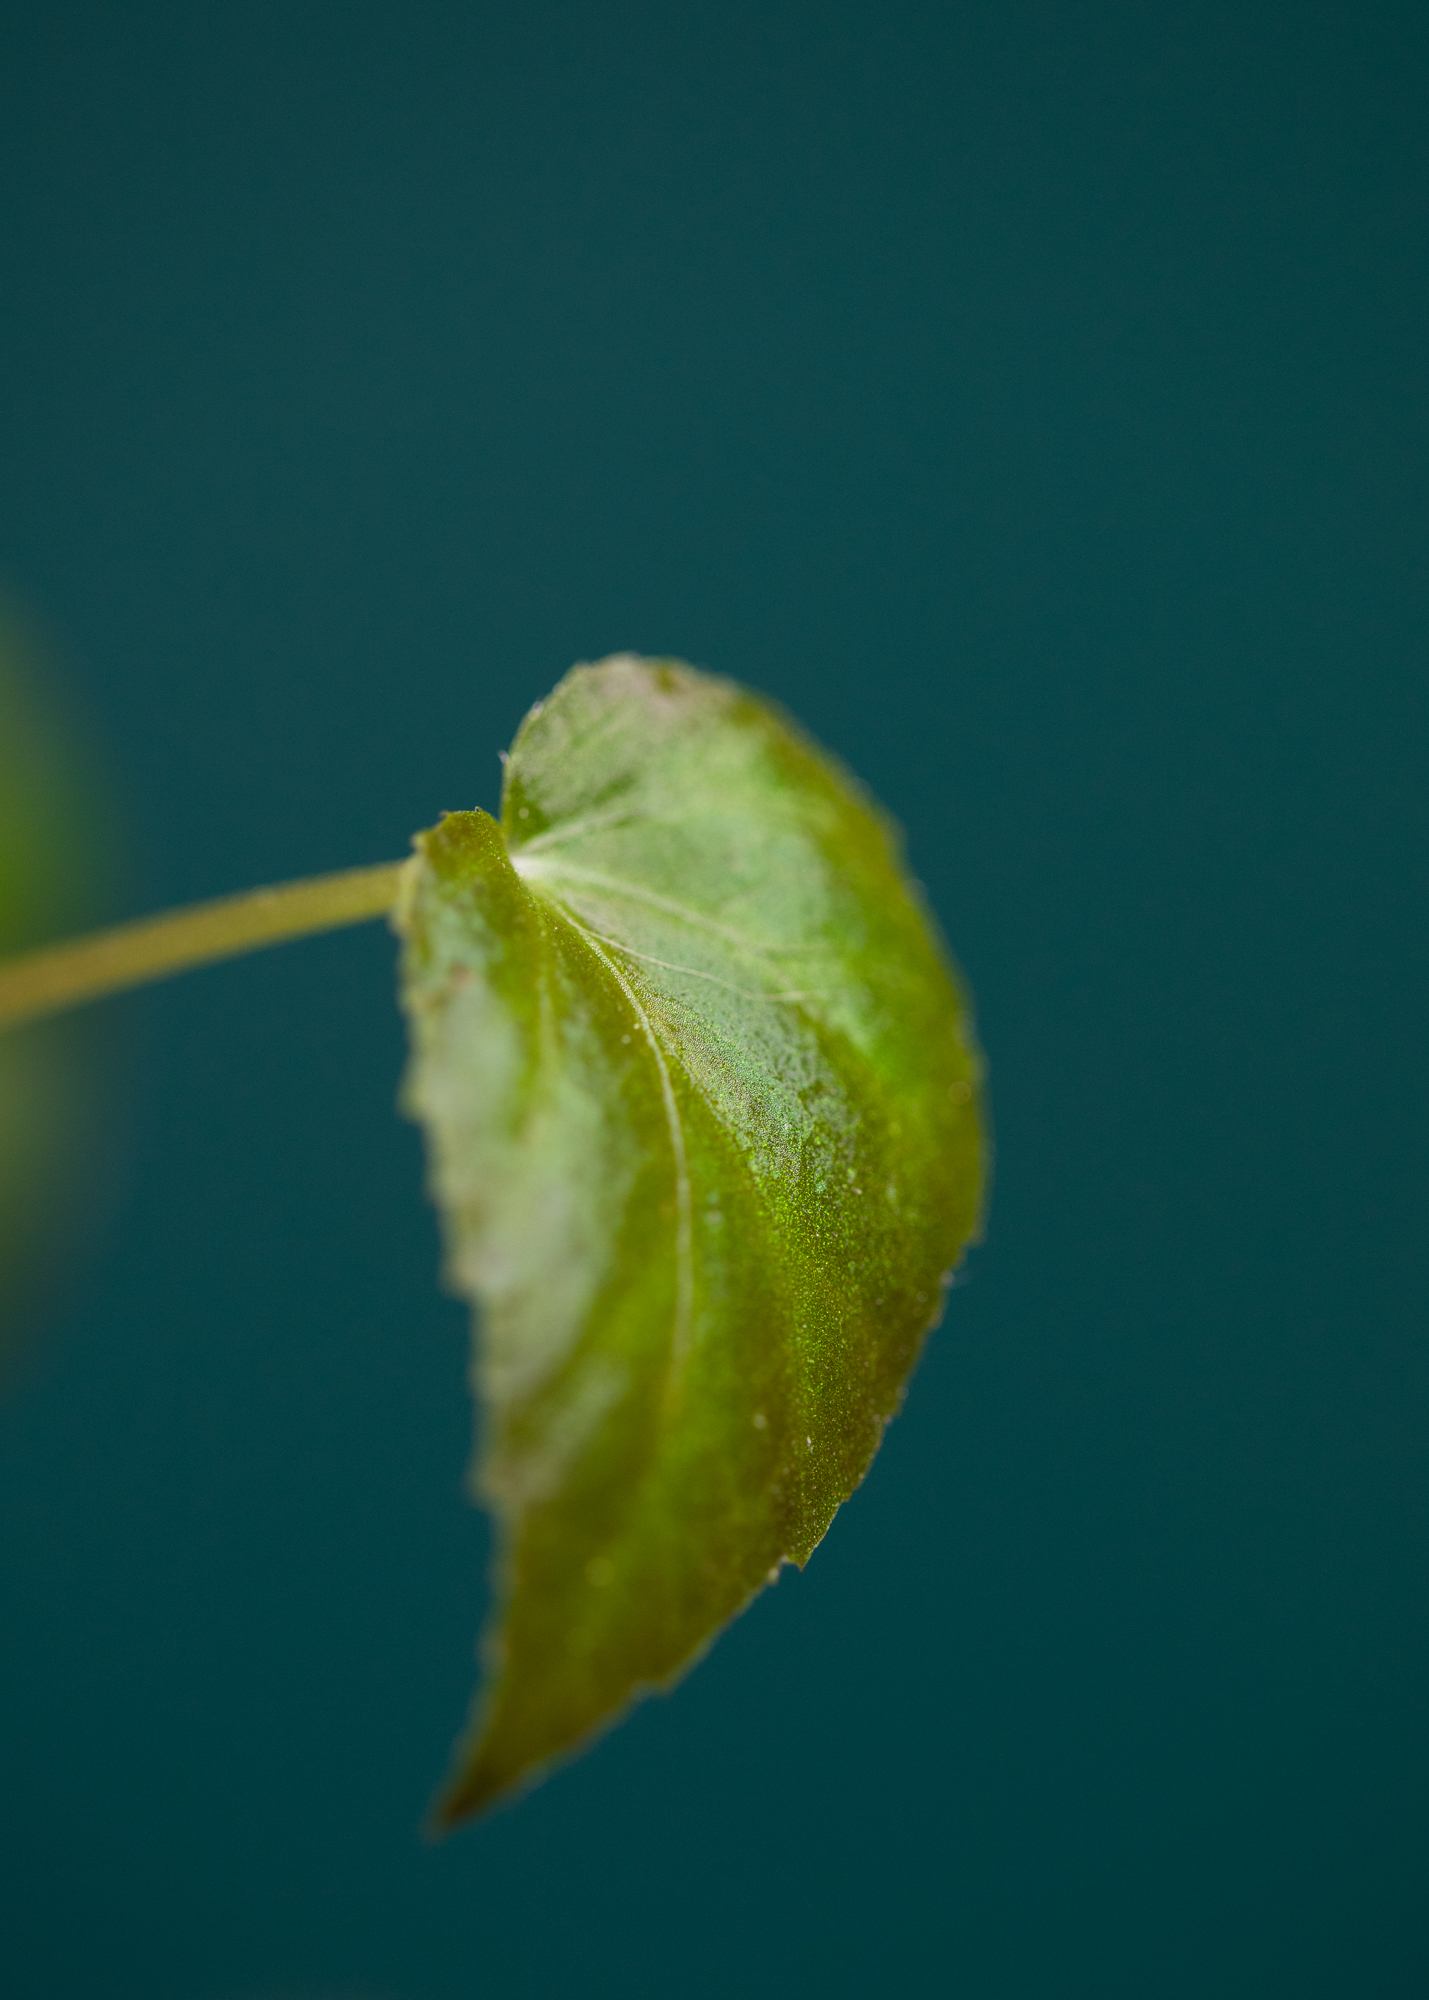 Begonia Pavonina